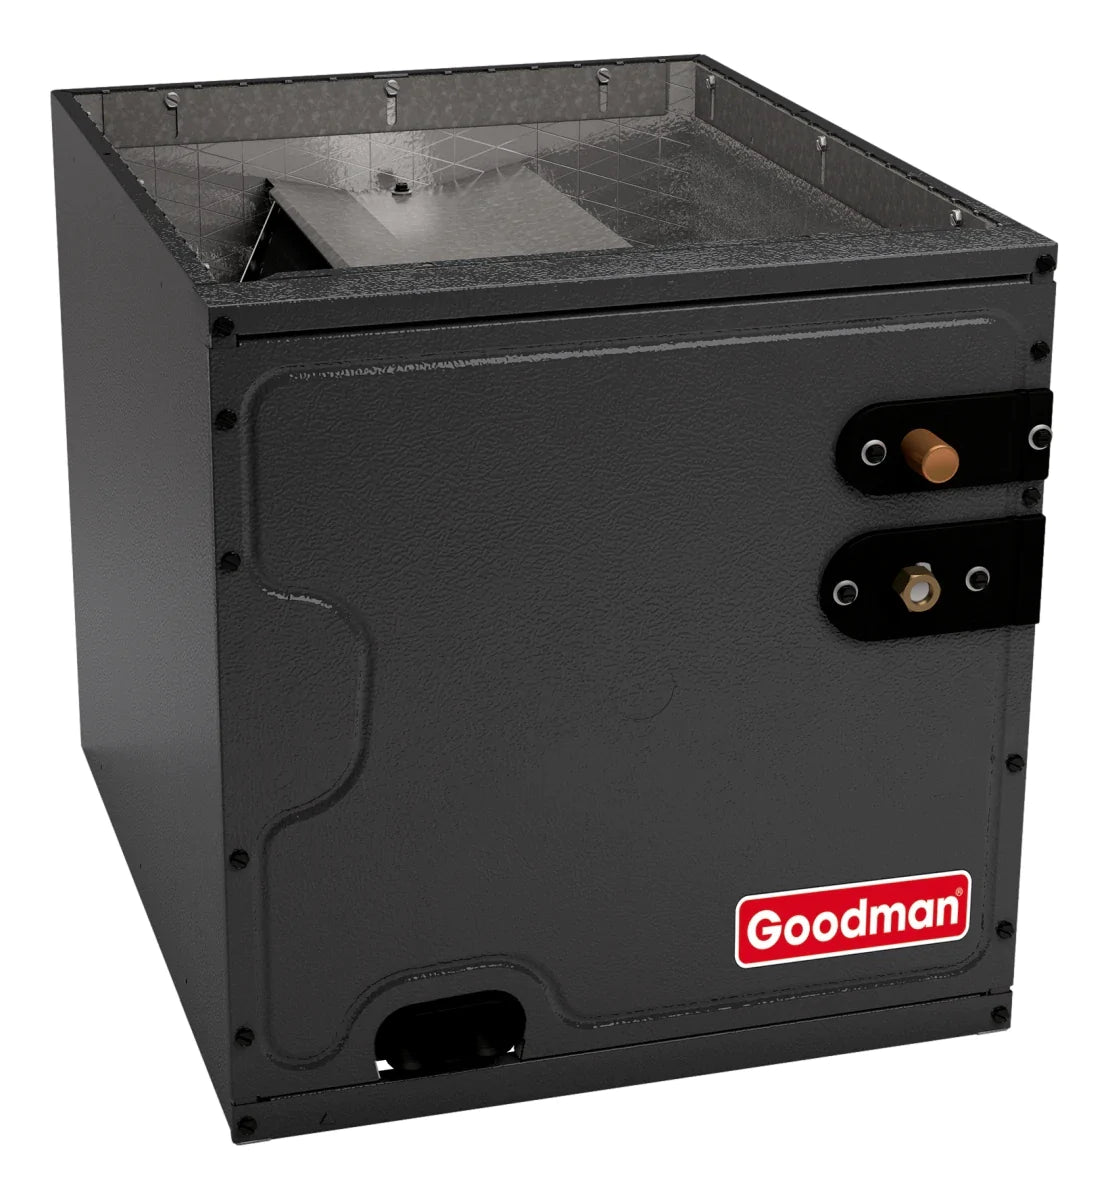 Goodman 2 TON 14.7 SEER2 Upflow AC system with 80% AFUE 80k BTU 2 stage Low NOx Furnace (GSXM402410, CAPTA3022B4, GMVC800803BX)